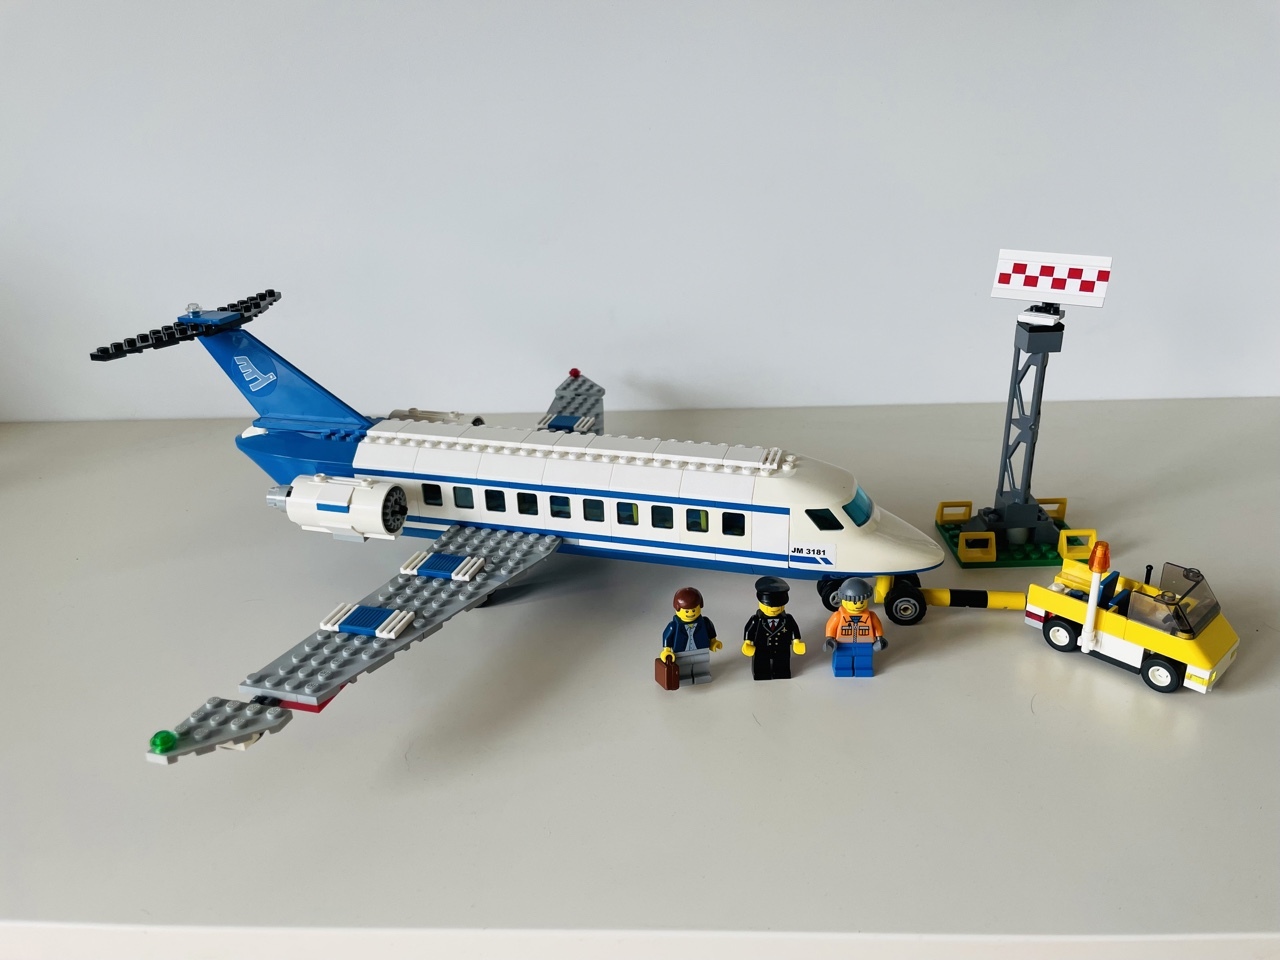 Lego City 3181 Samolot Pasażerski Passenger Plane | Warszawa | Kup teraz na Allegro